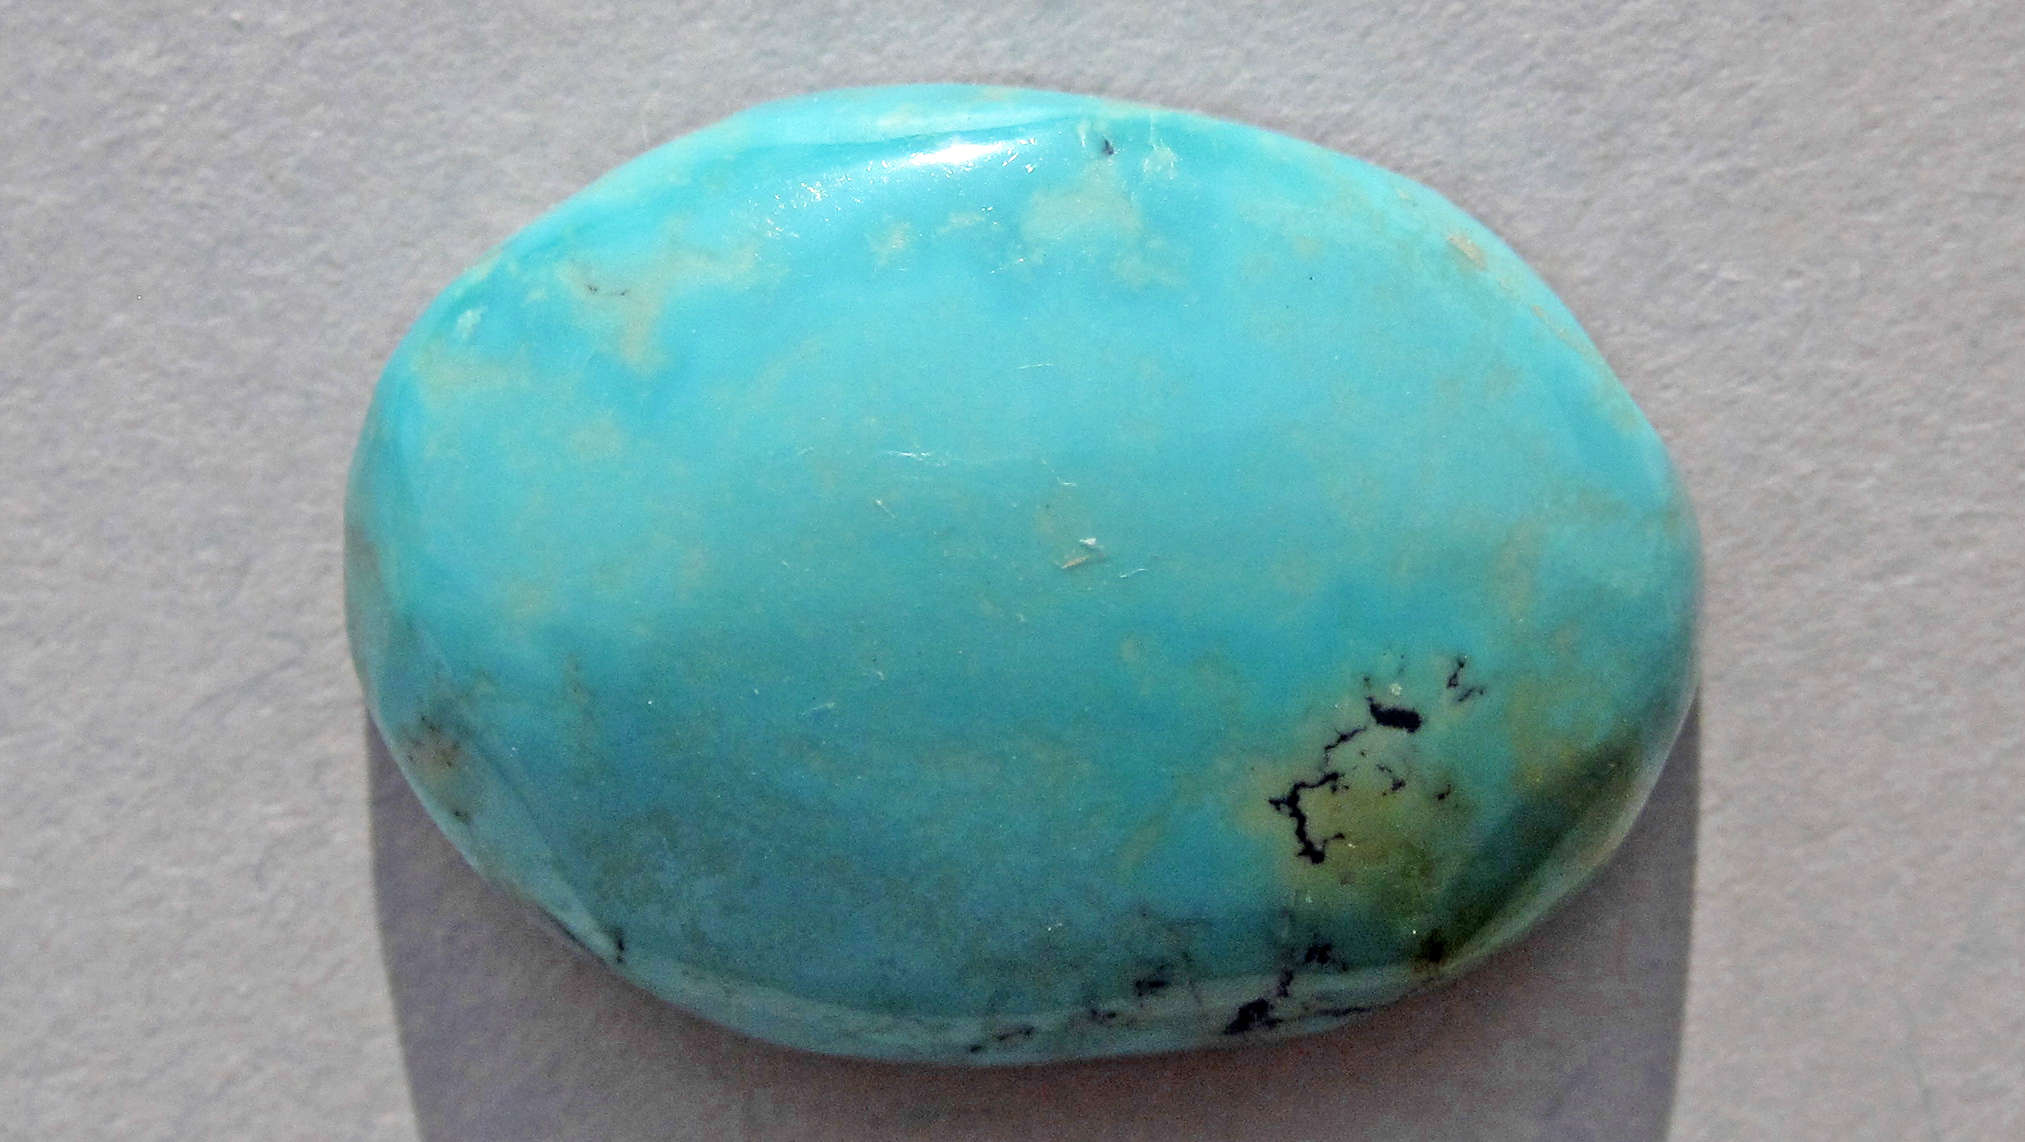 pierre de turquoise cabochon sur fond beige pour illustrer la turquoise bleue